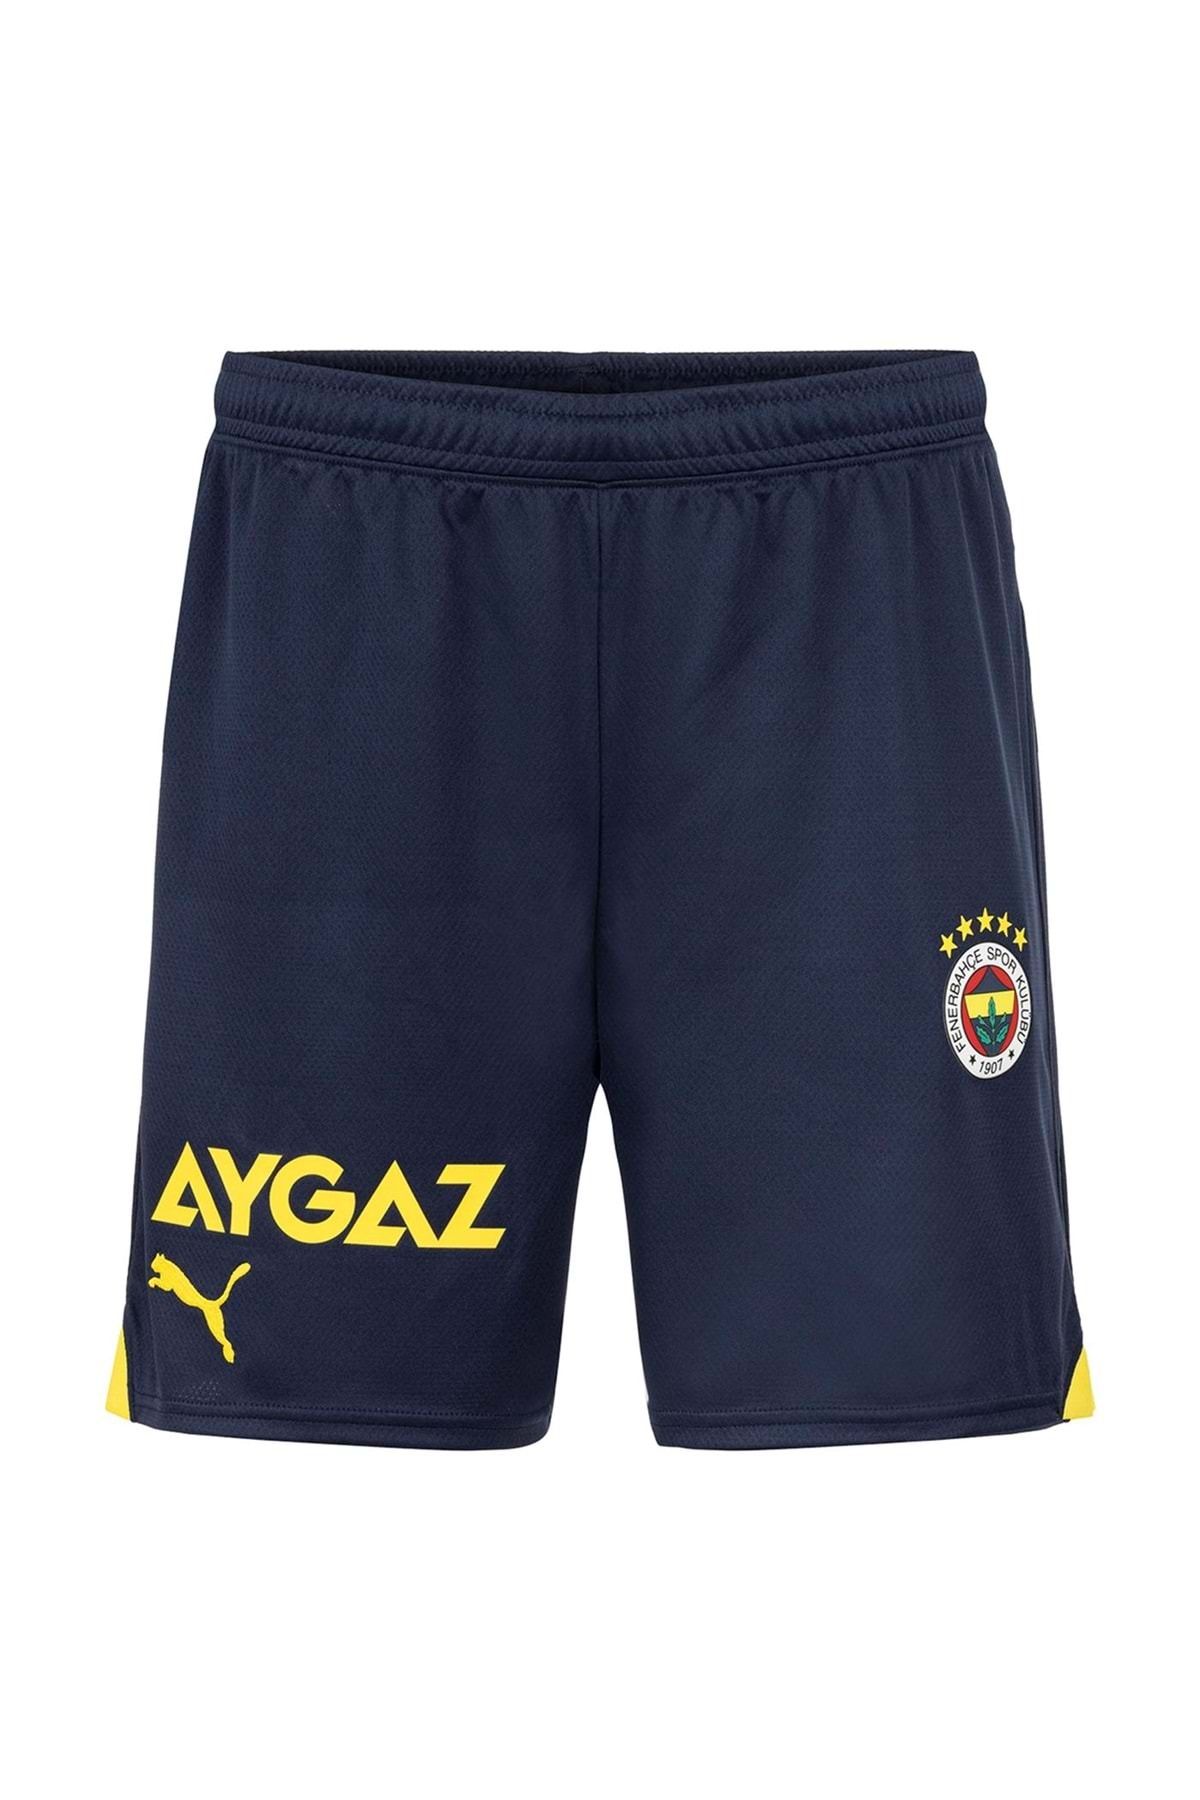 Fenerbahçe Erkek Mavi Futbol Şort 77202001